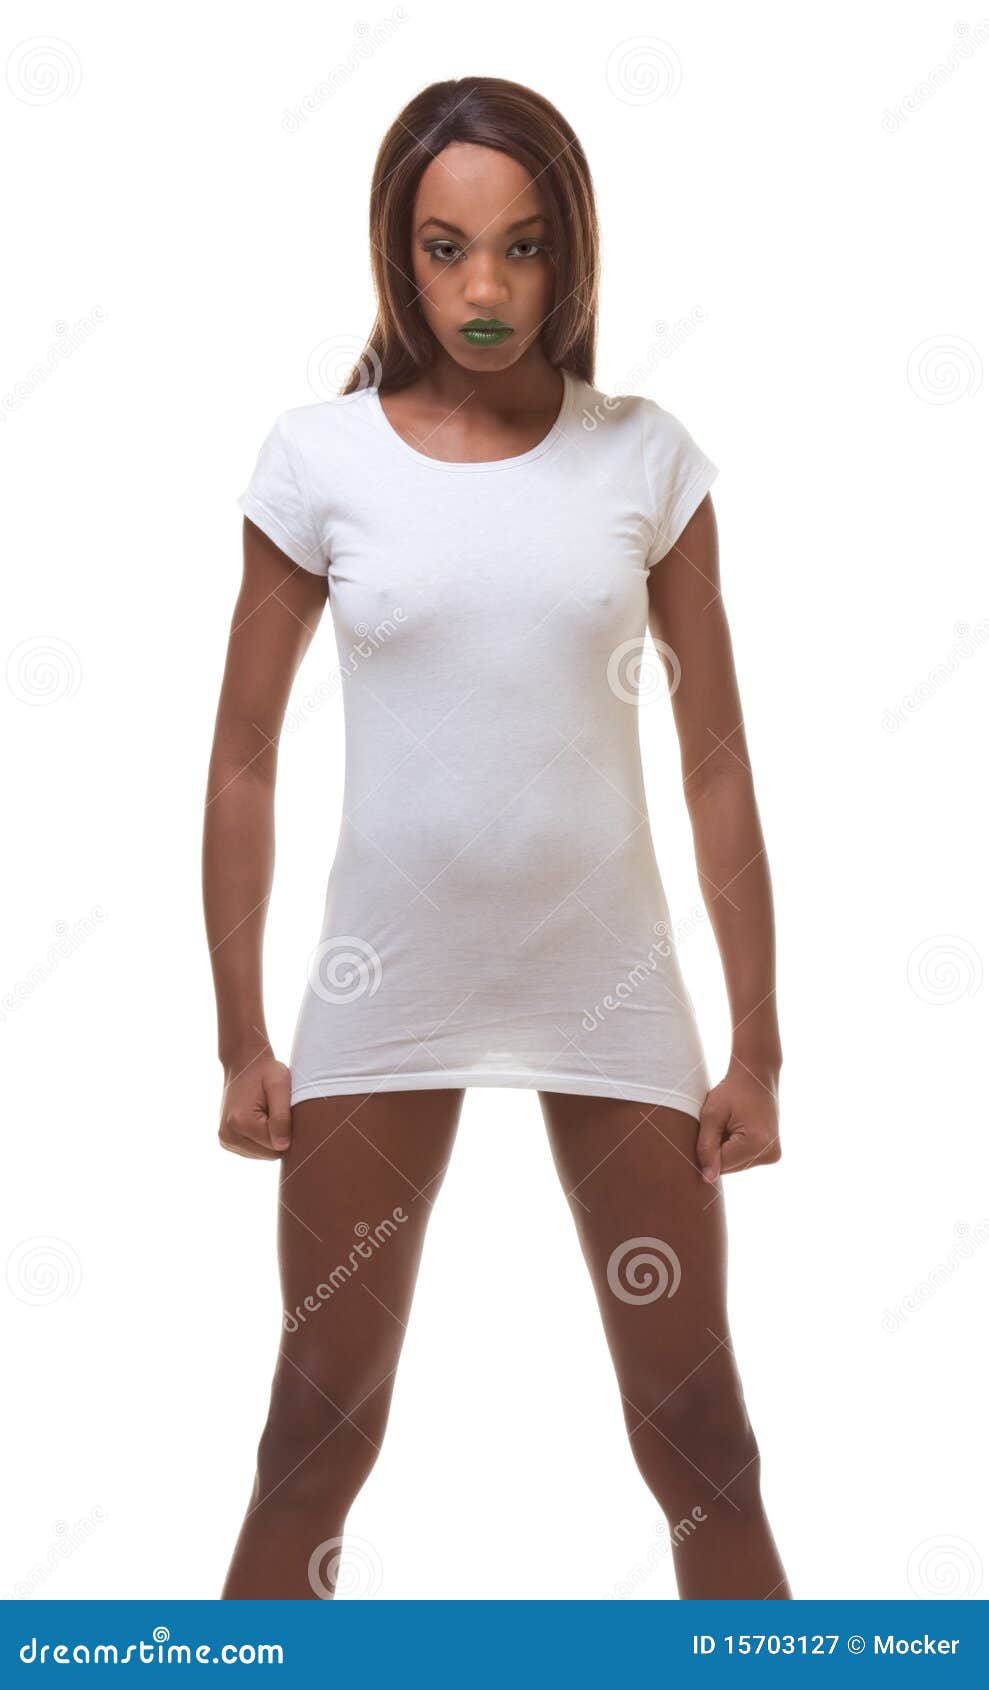 https://thumbs.dreamstime.com/z/black-naked-woman-white-t-shirt-slender-legs-15703127.jpg